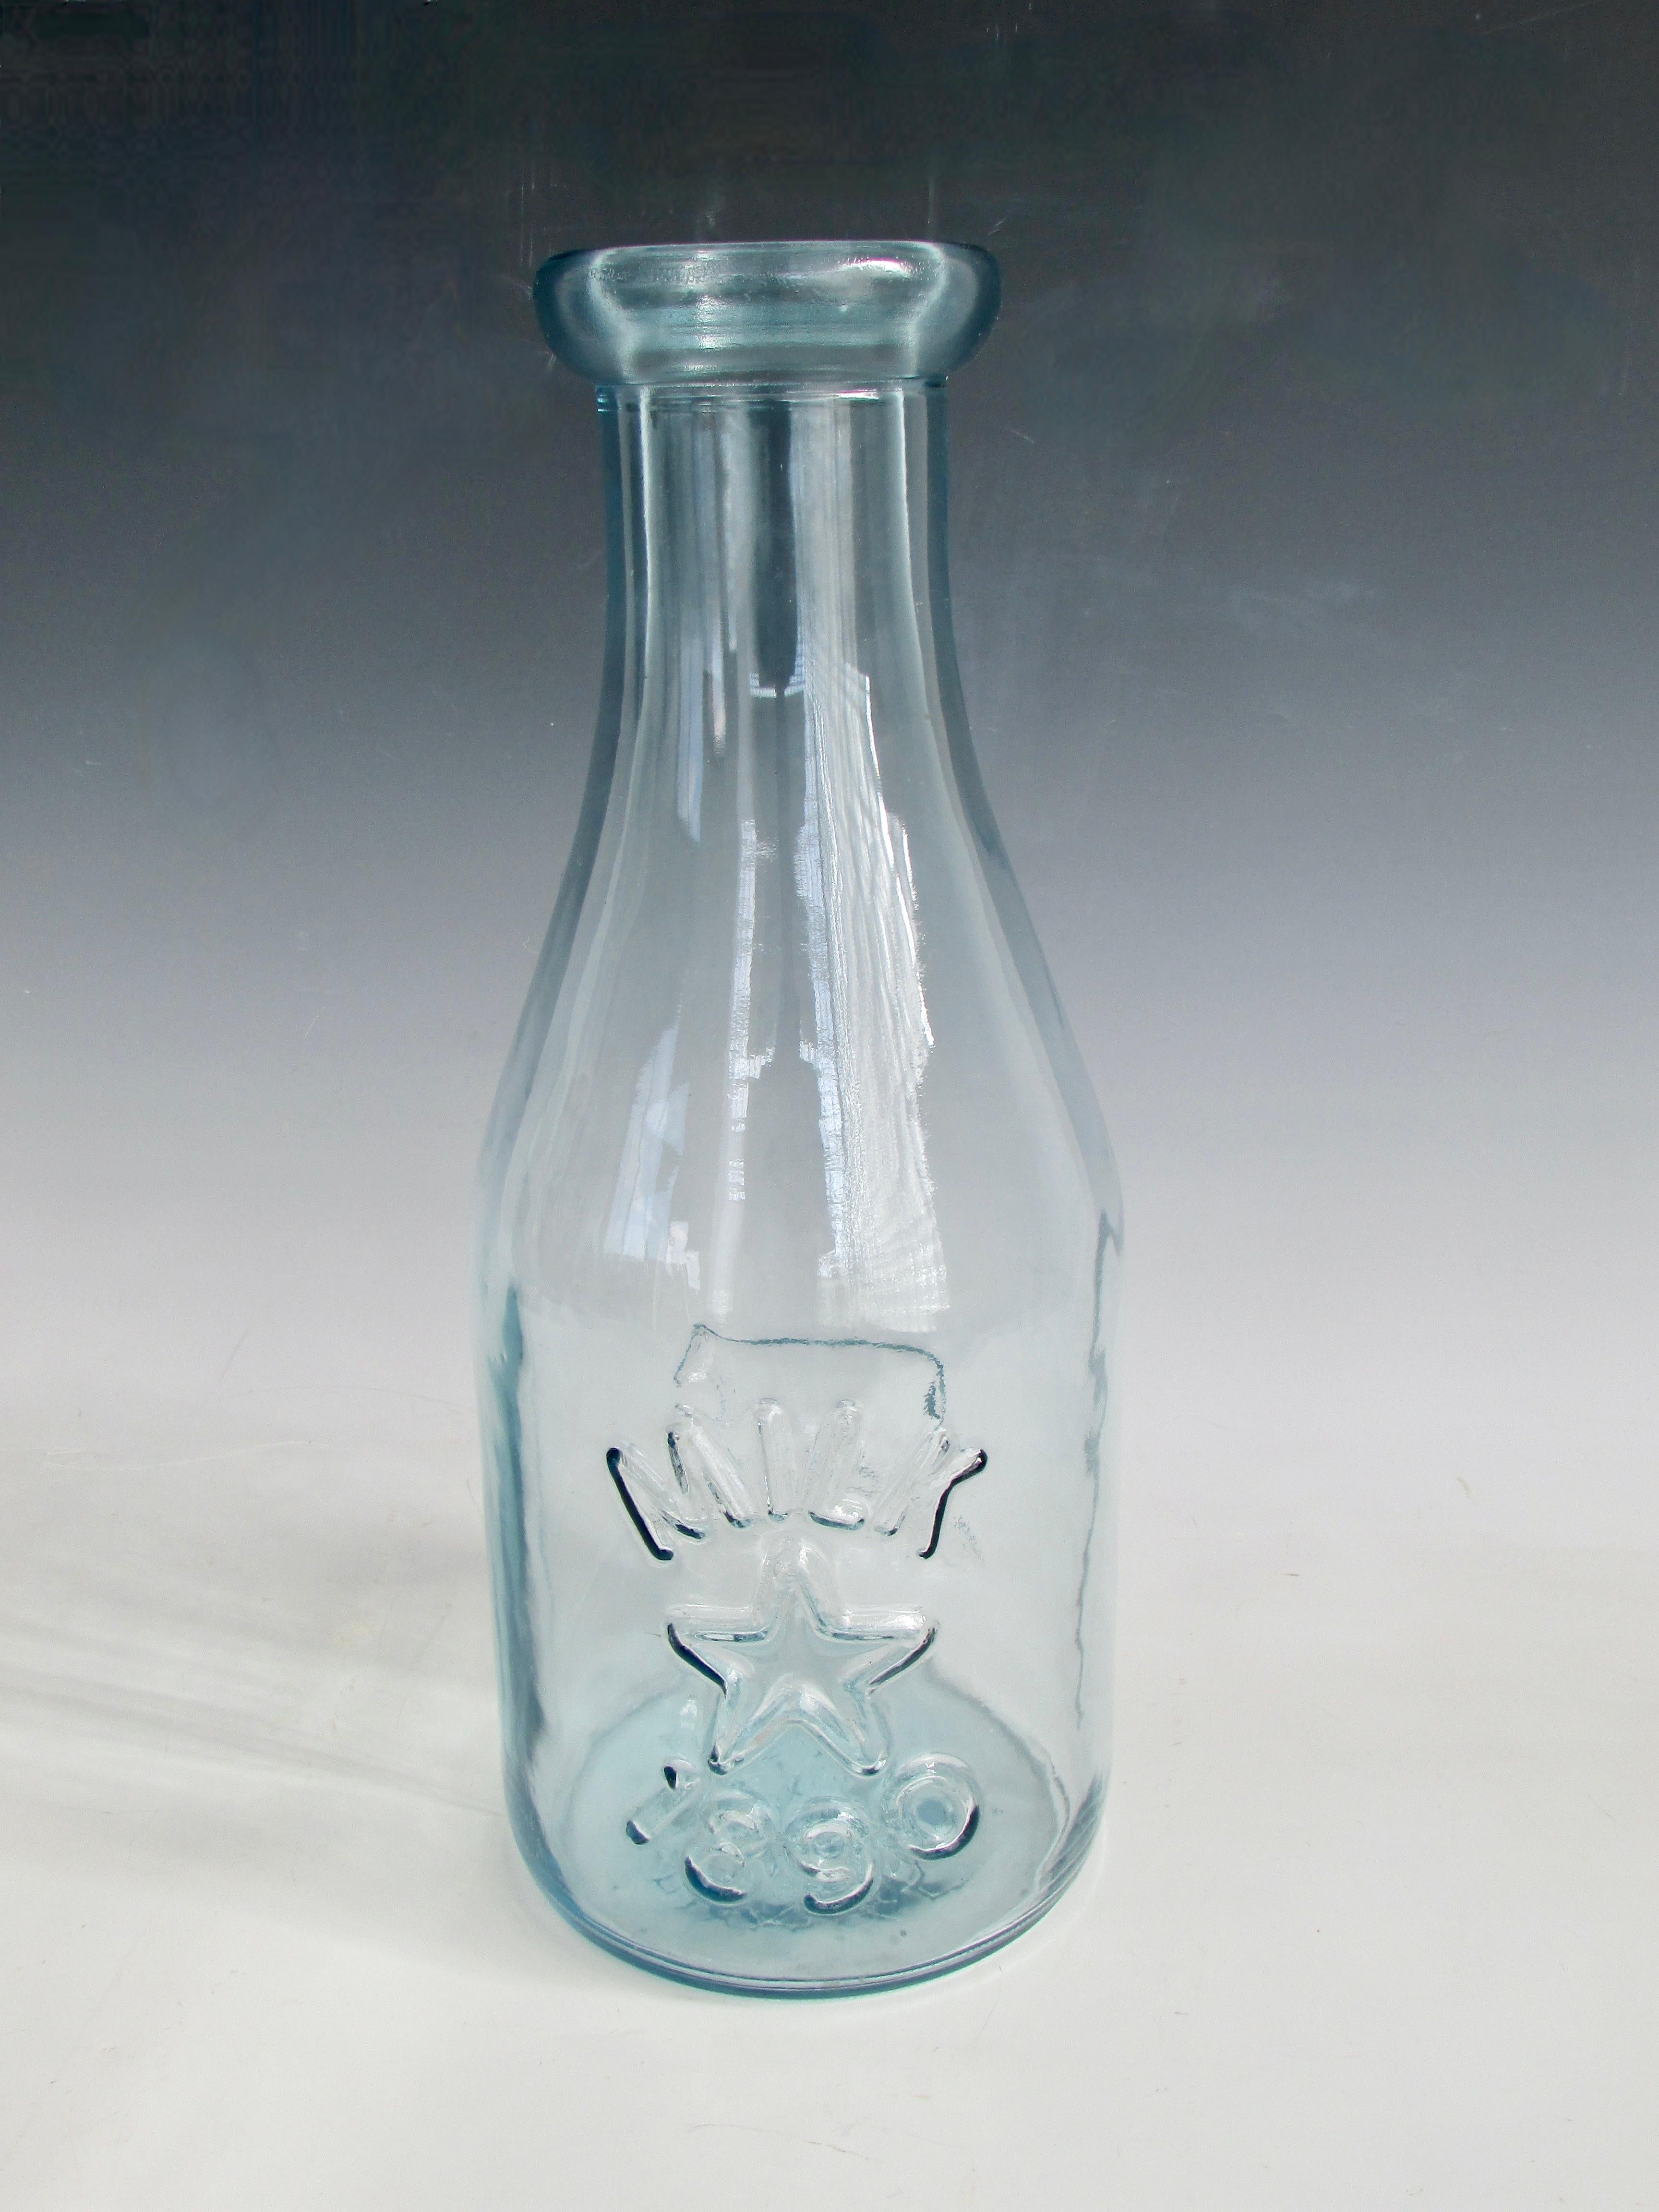 Riesige Milchflasche aus blau getöntem Glas. In eine Form geblasen. Kuhbild auf der einen Seite, Stern und 1890 auf der anderen Seite. Großer Stern auch auf der Unterseite. Wahrscheinlich in der zweiten Hälfte des 20. Jahrhunderts. Großes Geschäft